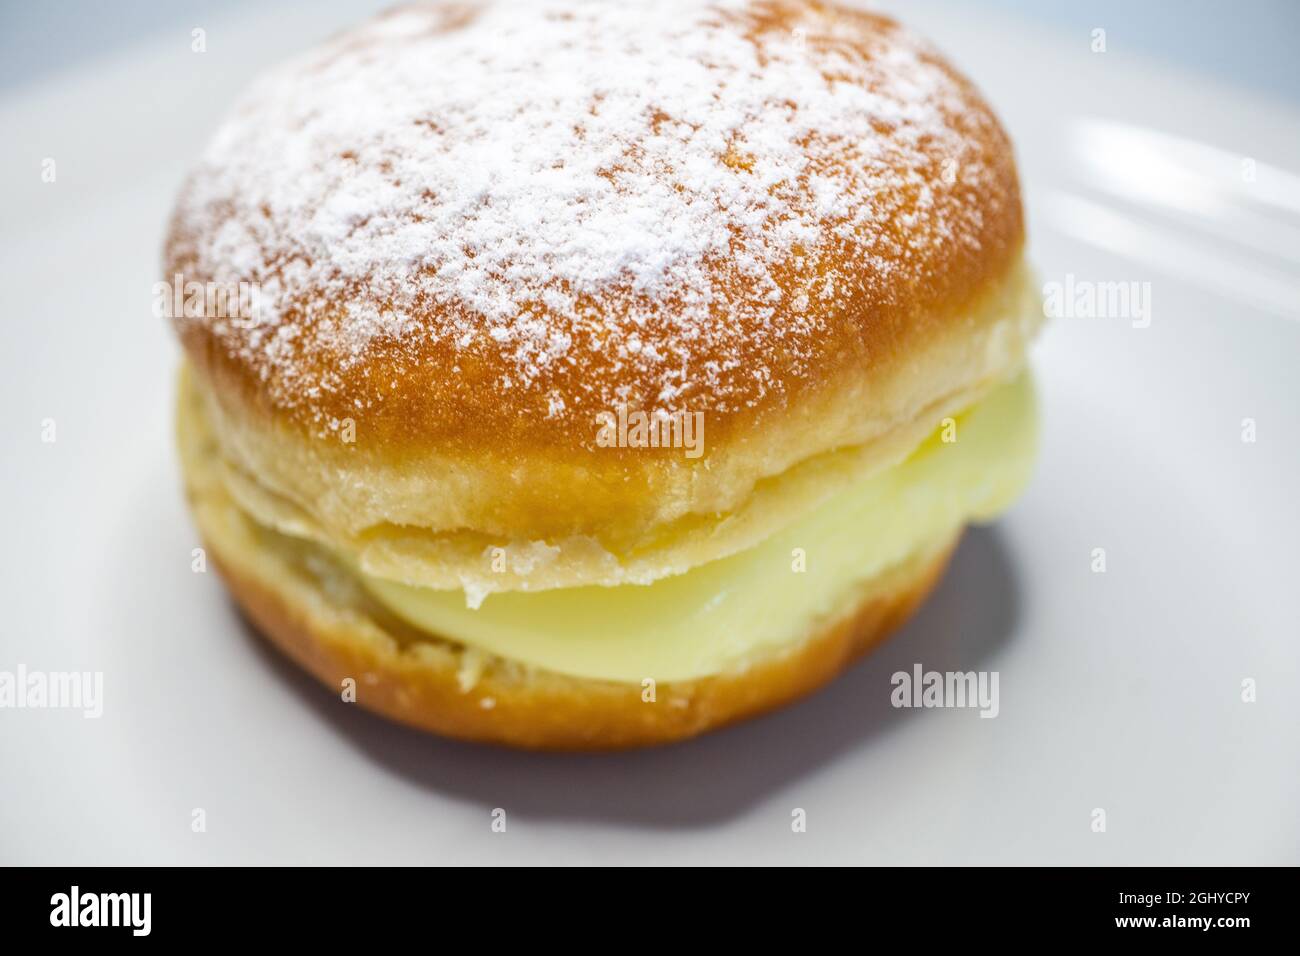 gros plan de la pâte berlinère sur une assiette blanche - plat de pâtisserie allemand avec garniture à la crème vanille Banque D'Images